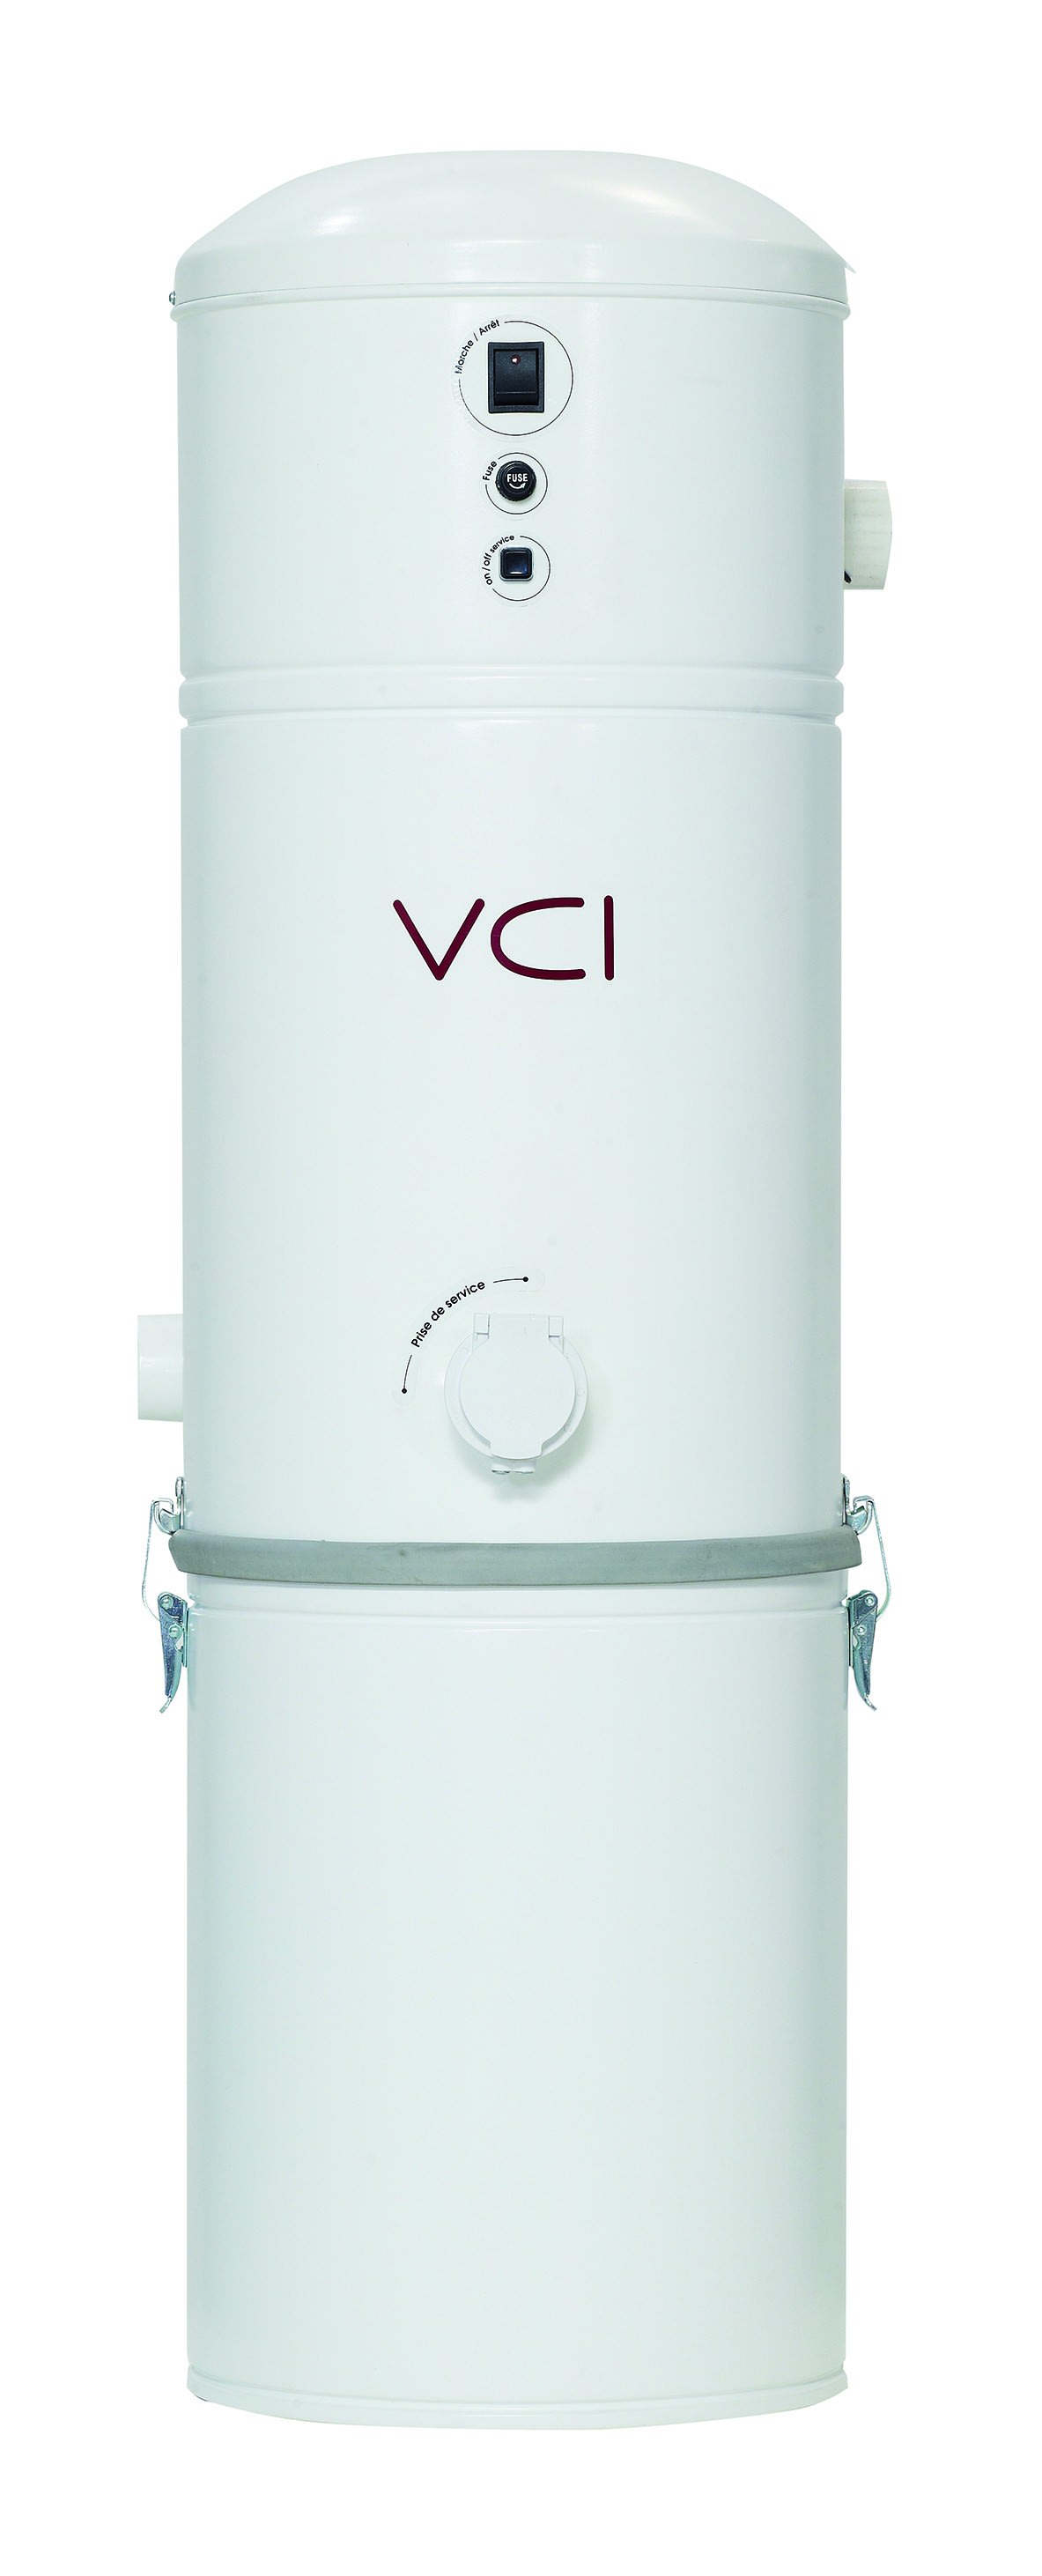 VCI - Centrale d'aspiration 1550W + double filtre